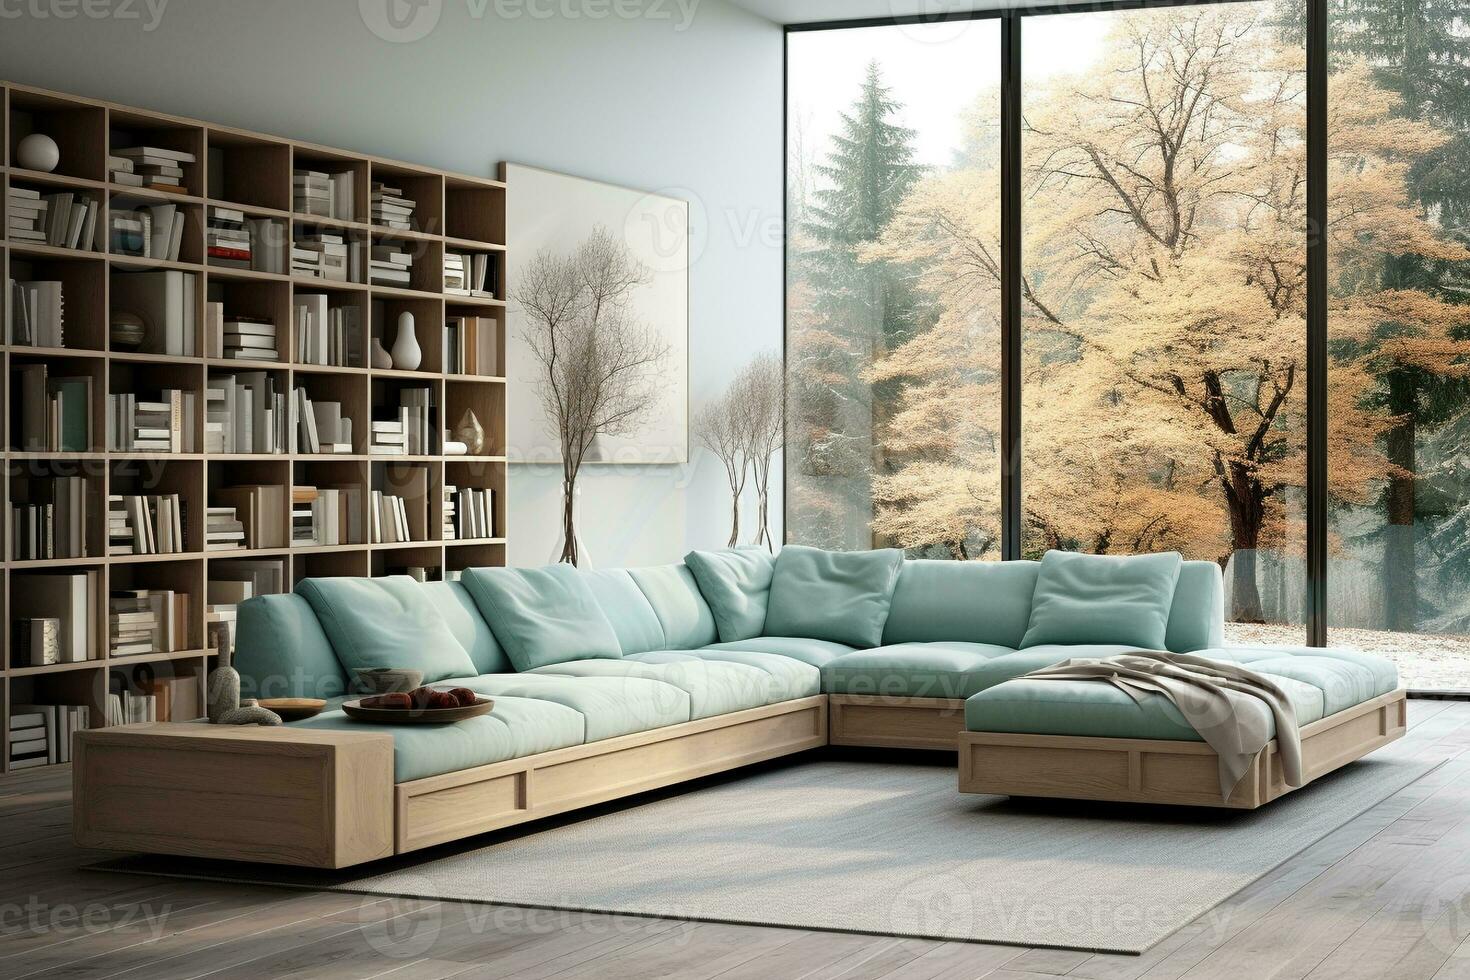 Modern living room interior with aqua sofa and bookshelf .Generative AI photo